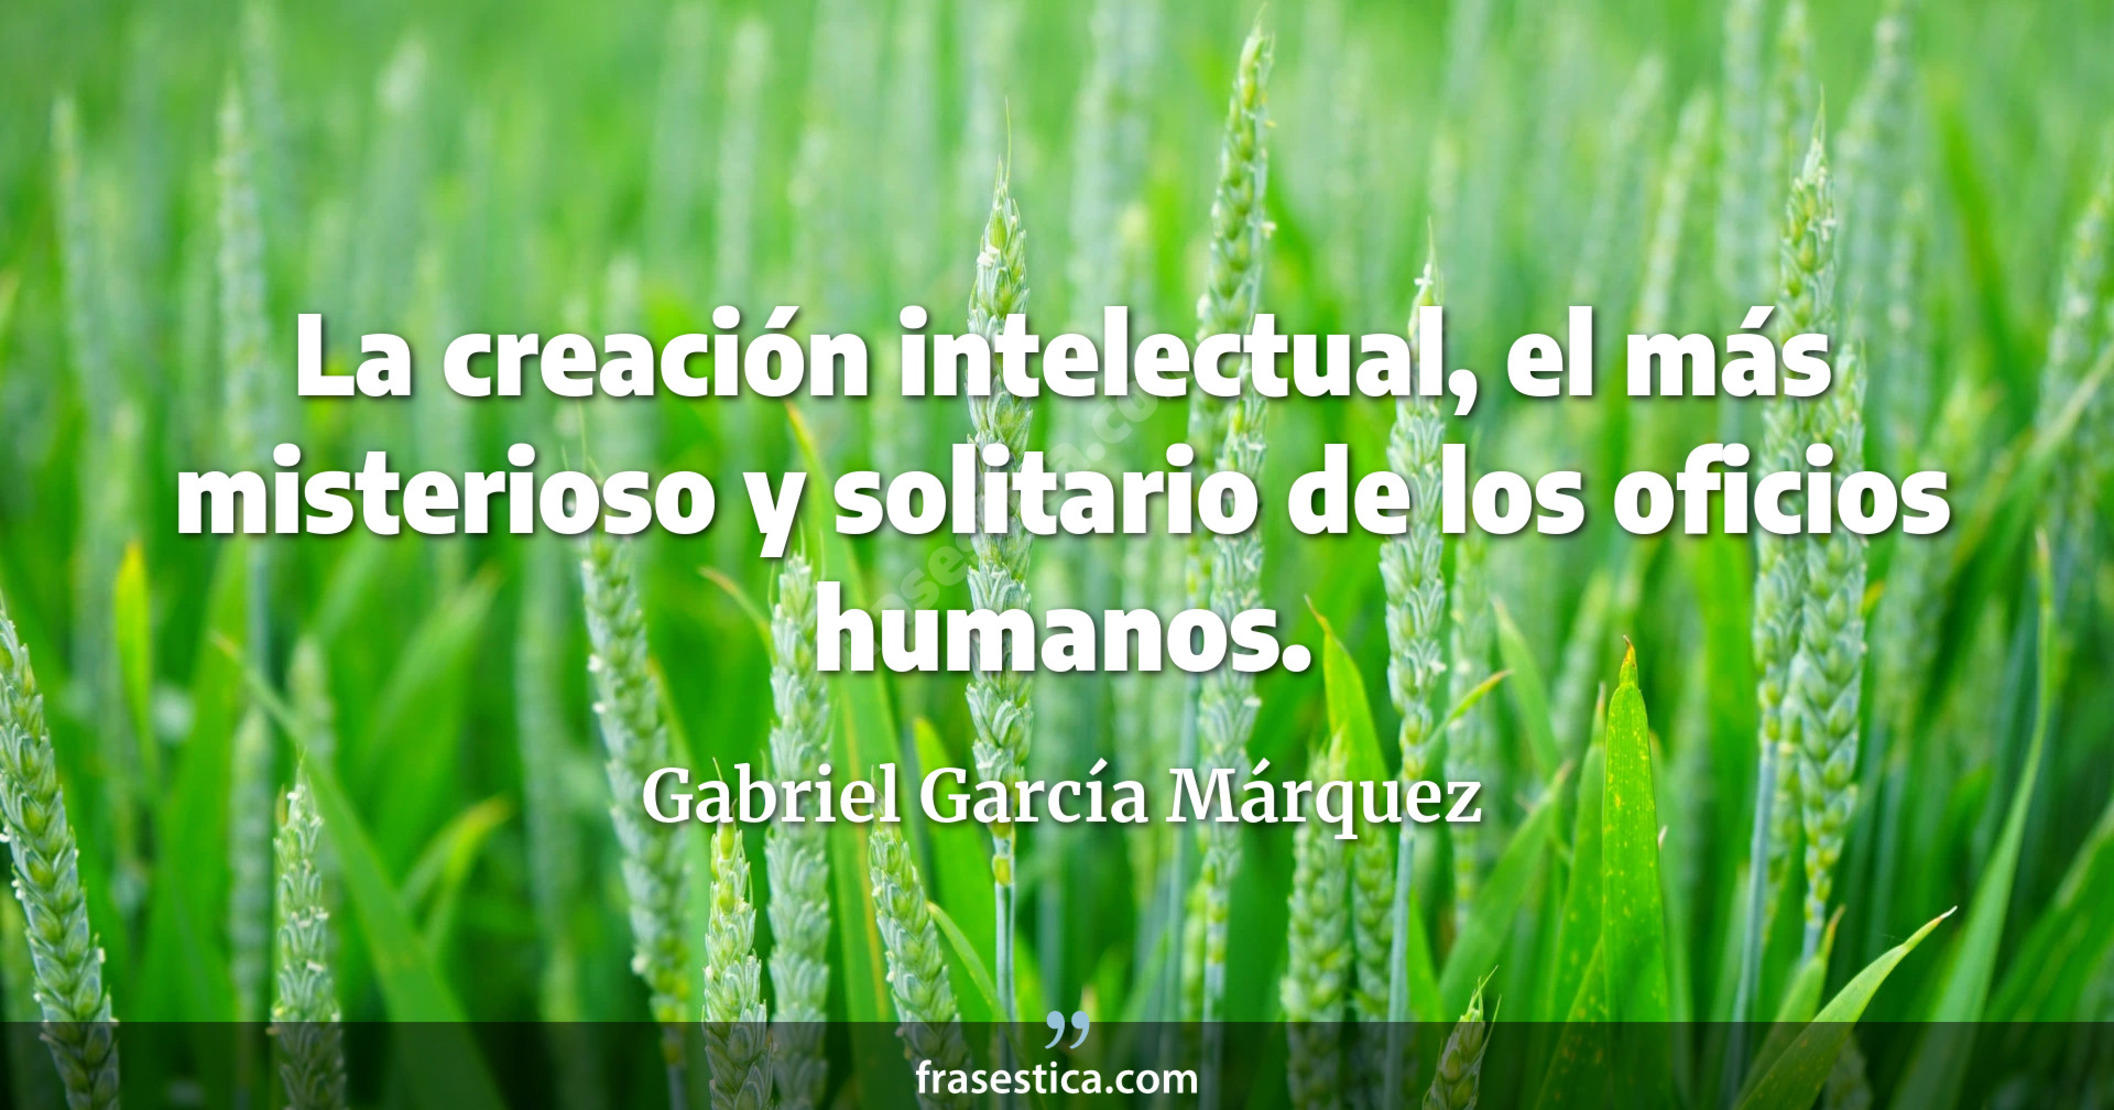 La creación intelectual, el más misterioso y solitario de los oficios humanos. - Gabriel García Márquez